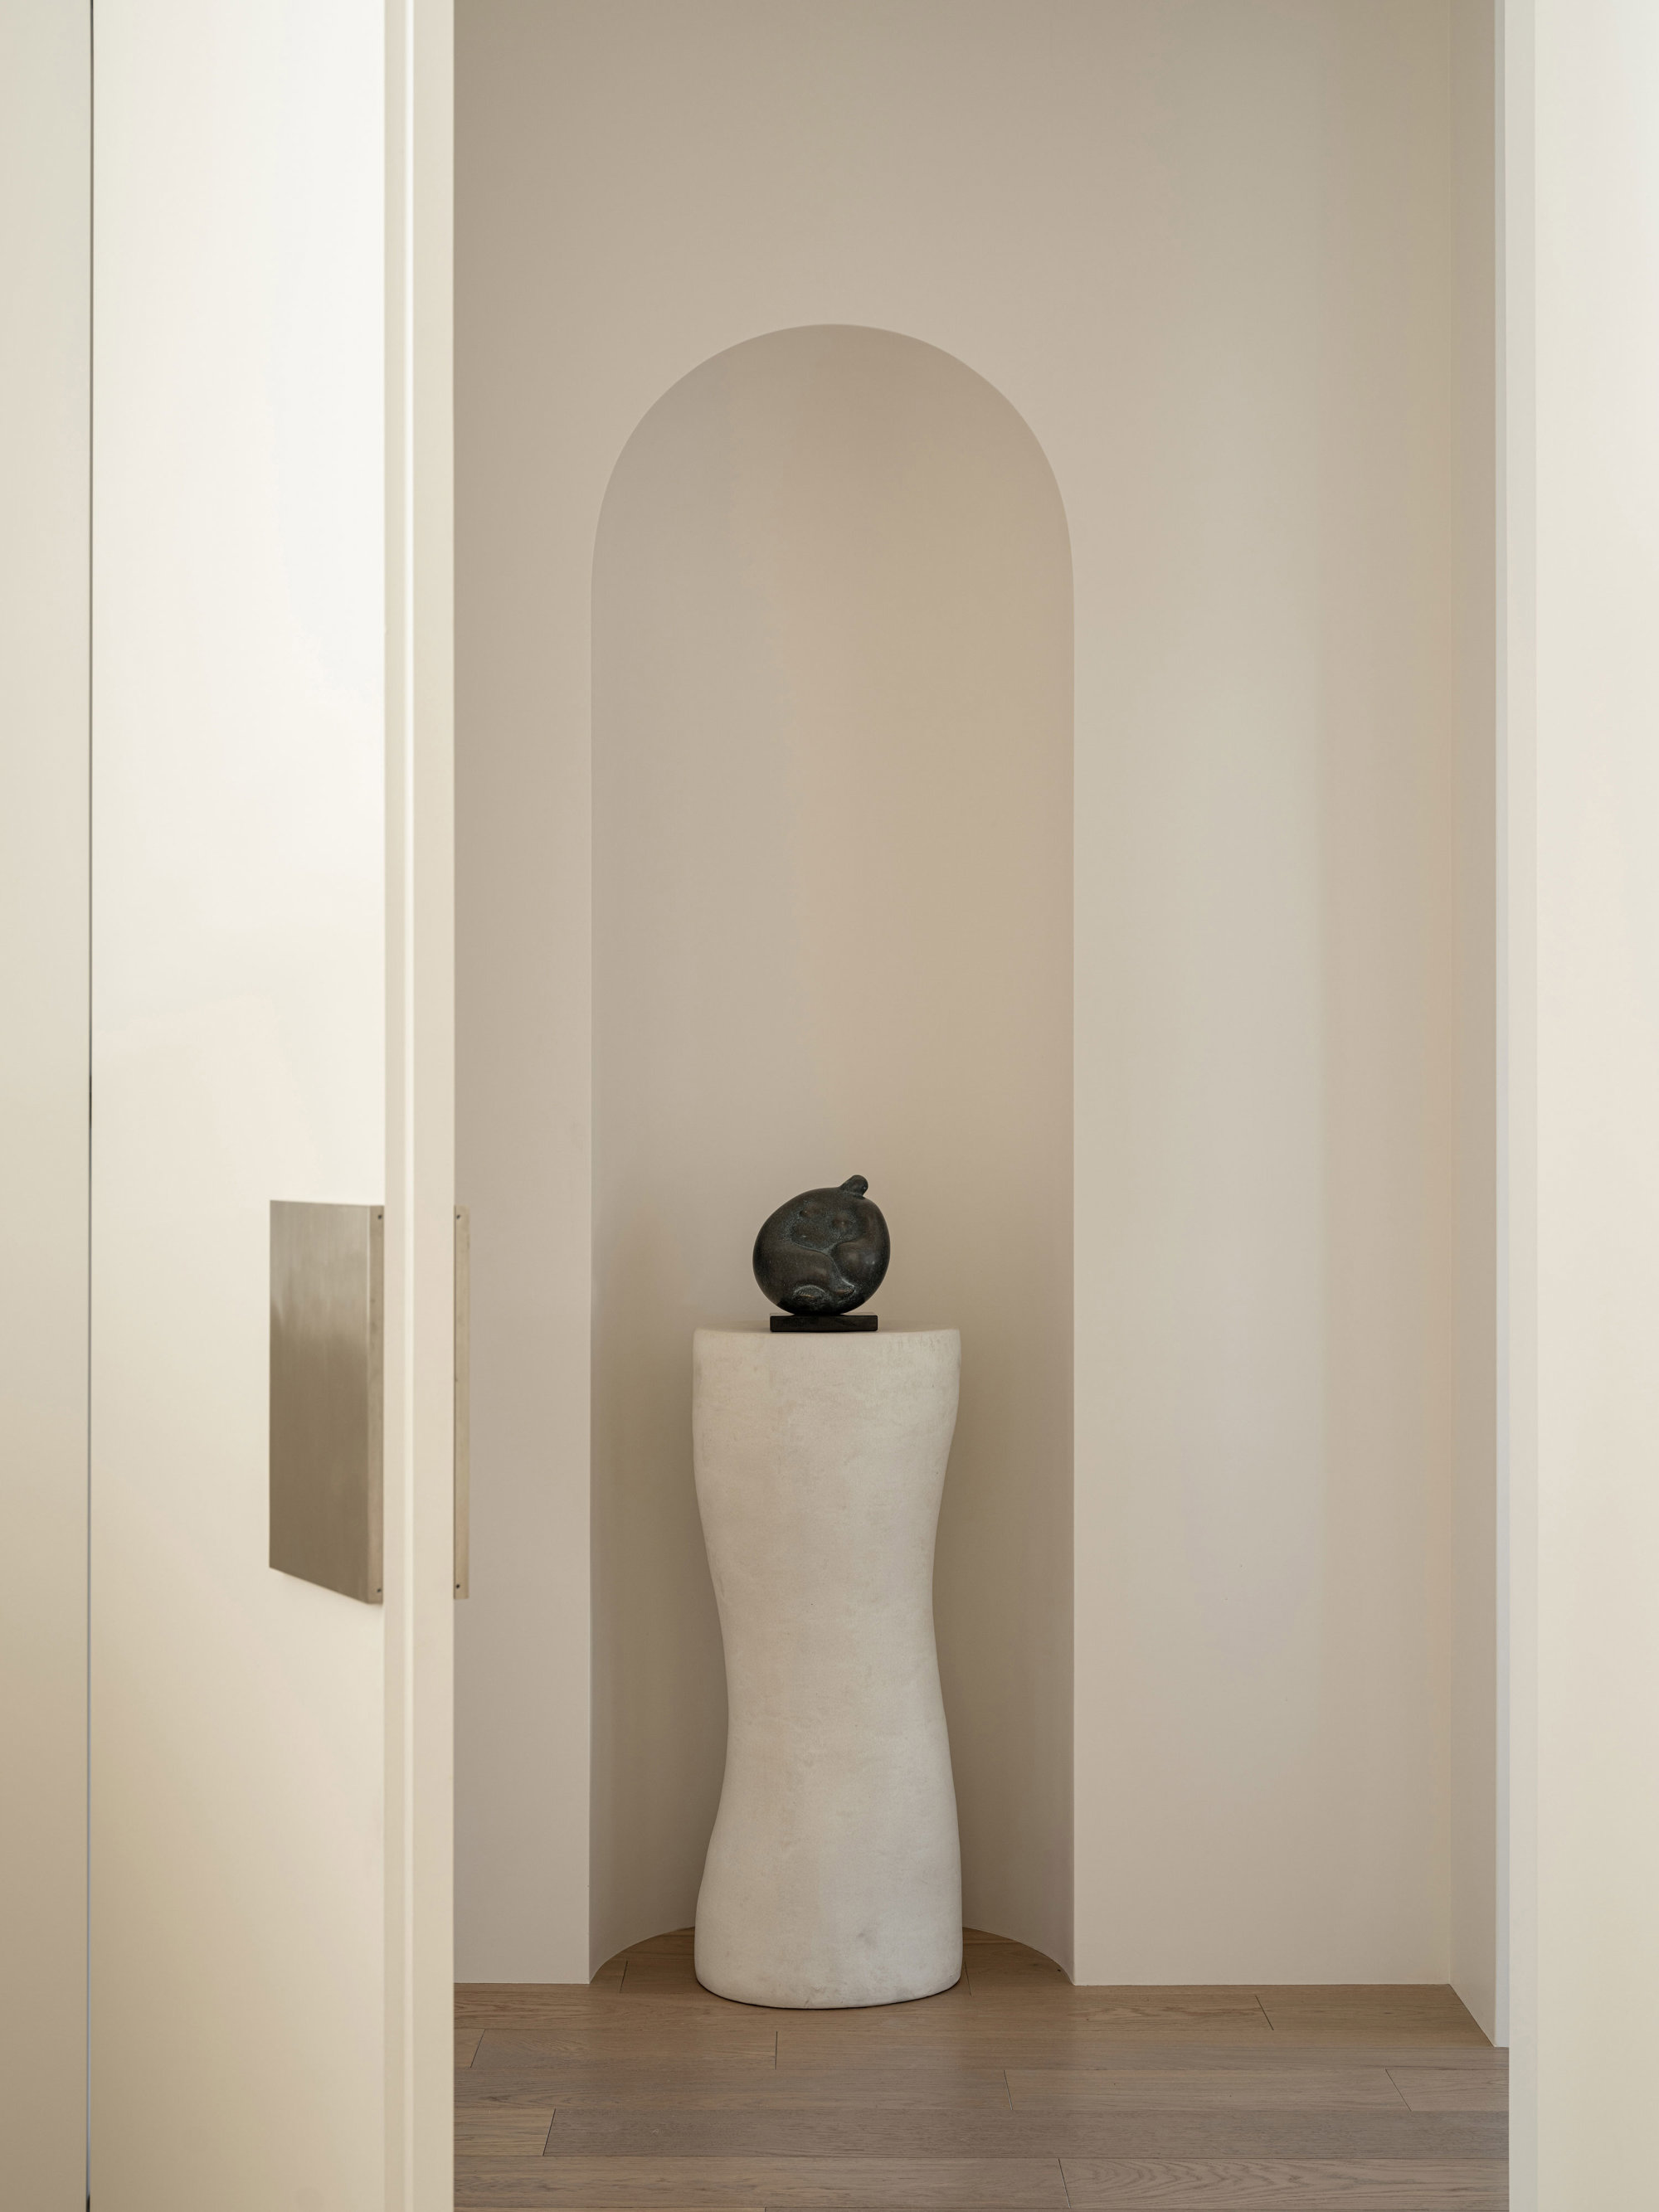 puerta blanca con una escultura sobre pedestal blanco